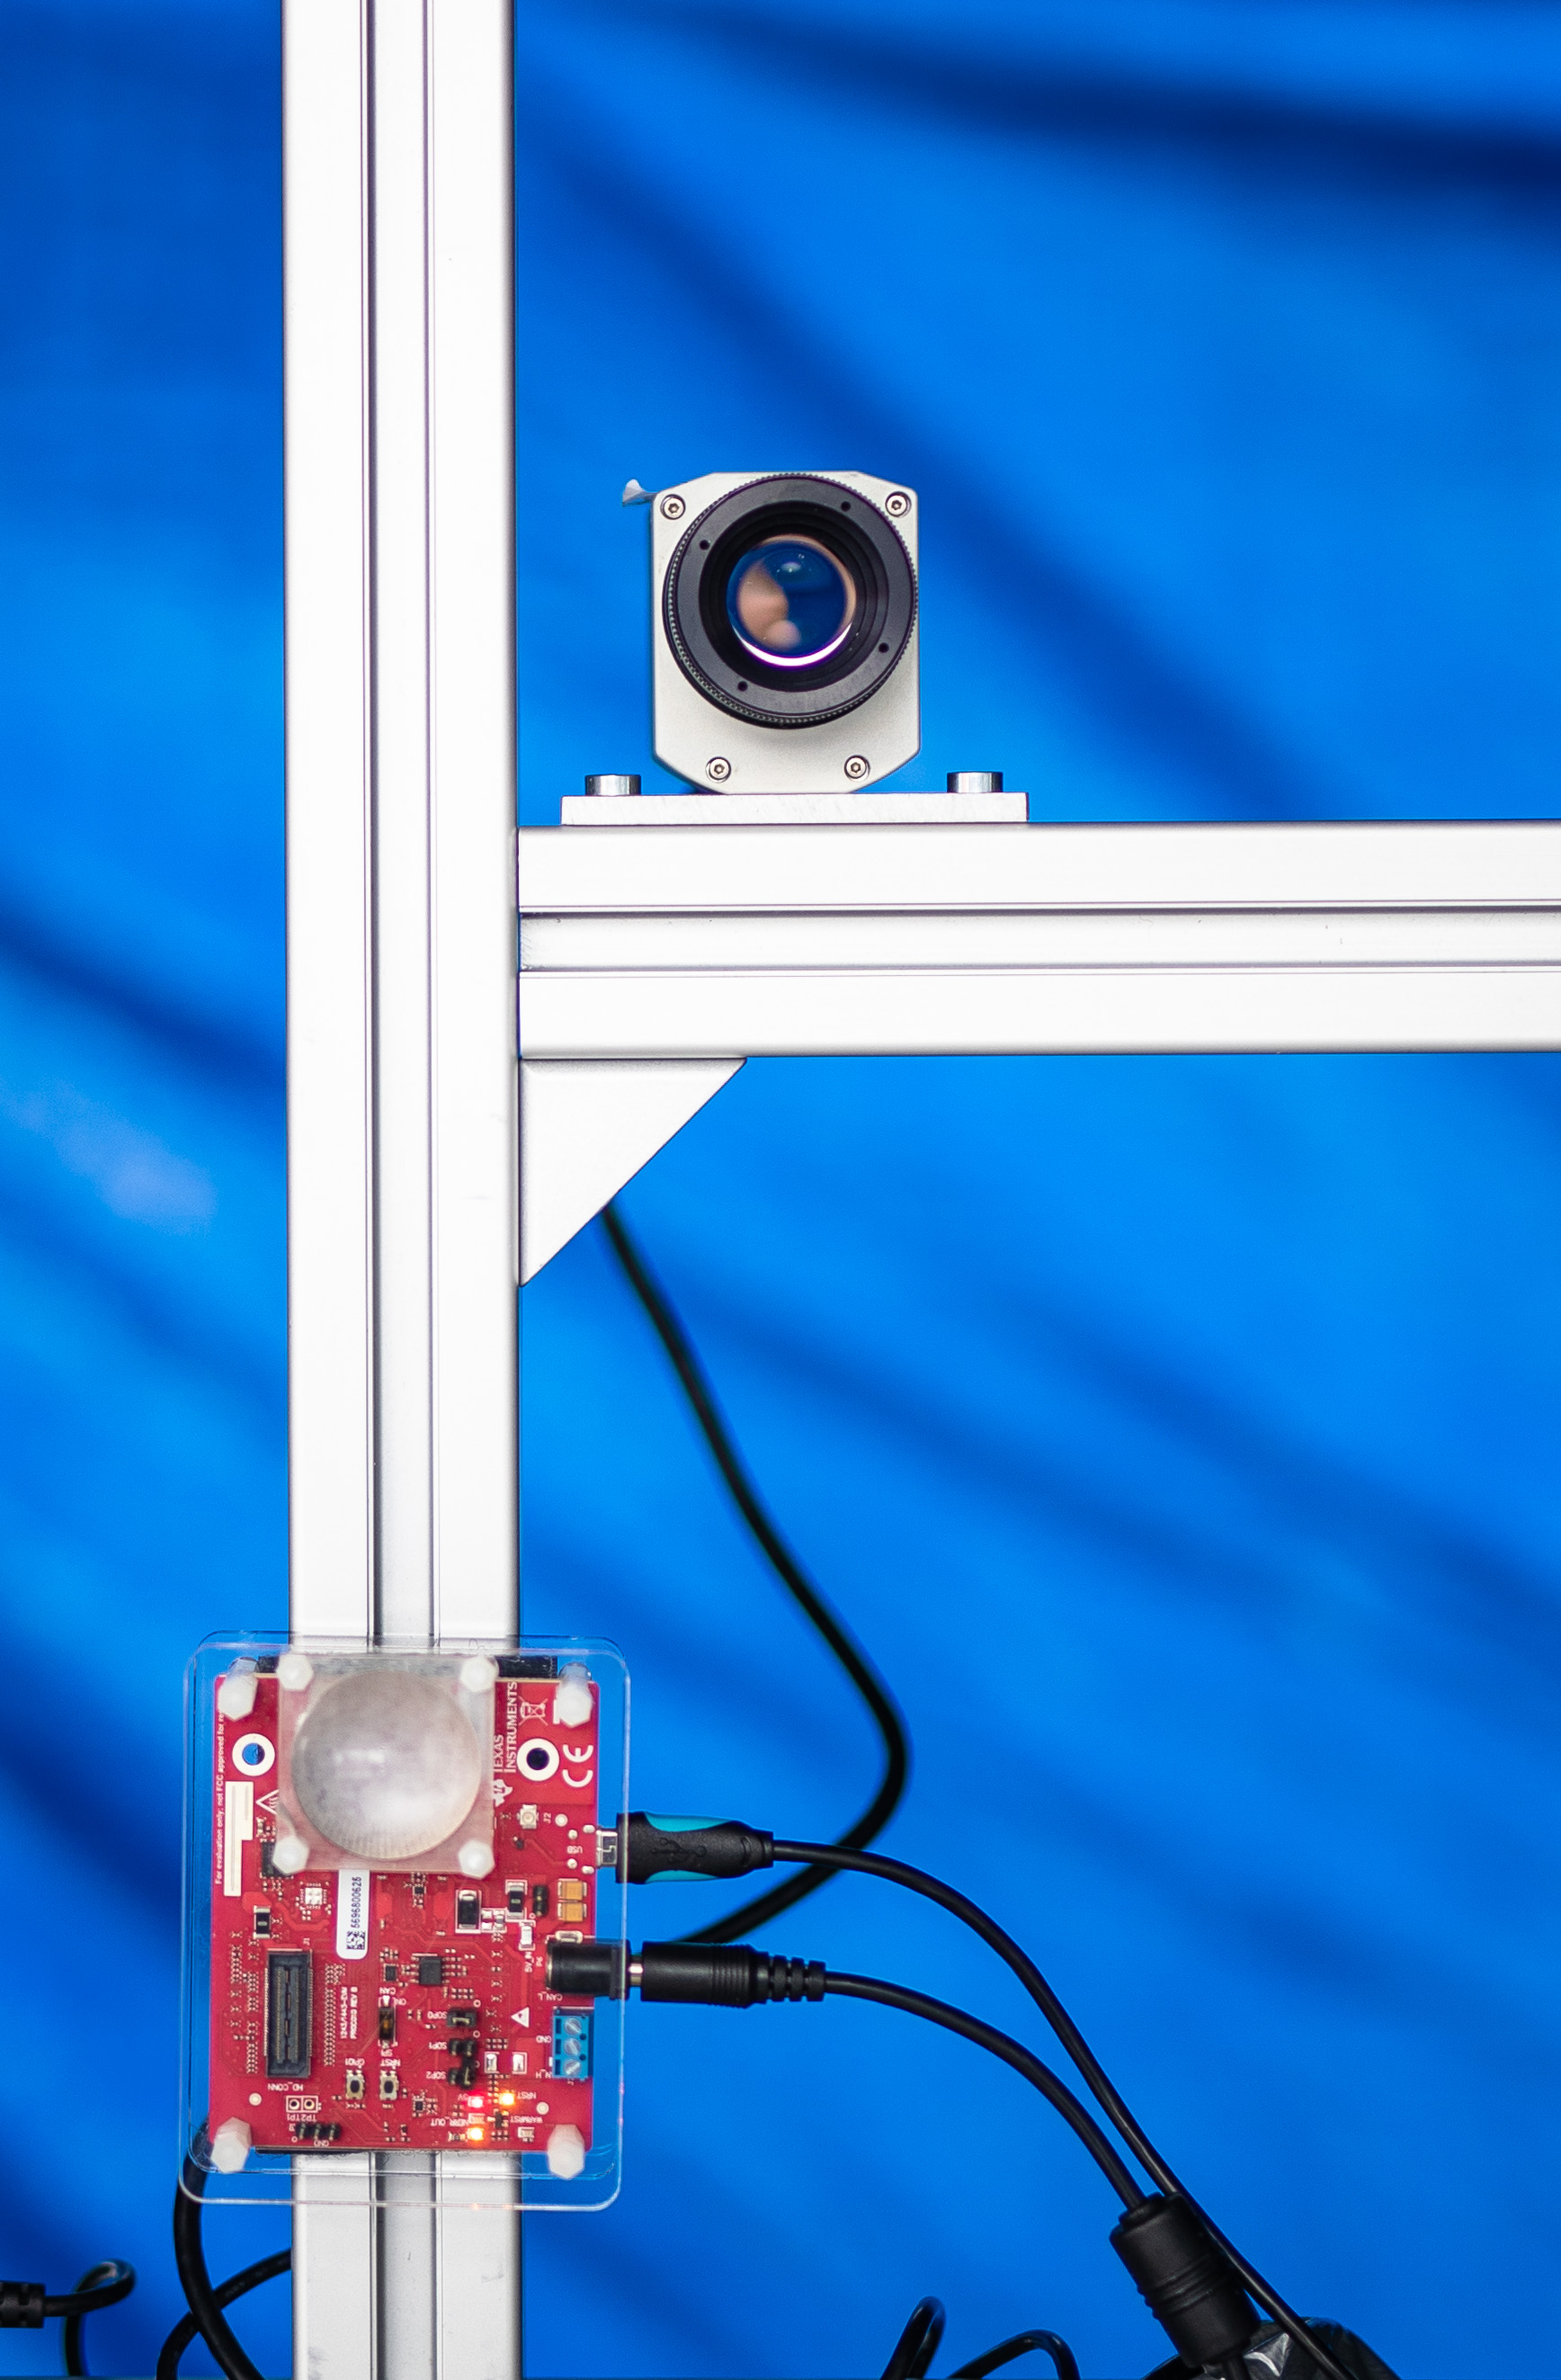 Testvorrichtung mit Wärmebildkamera und Mikrowellensender und -empfänger.